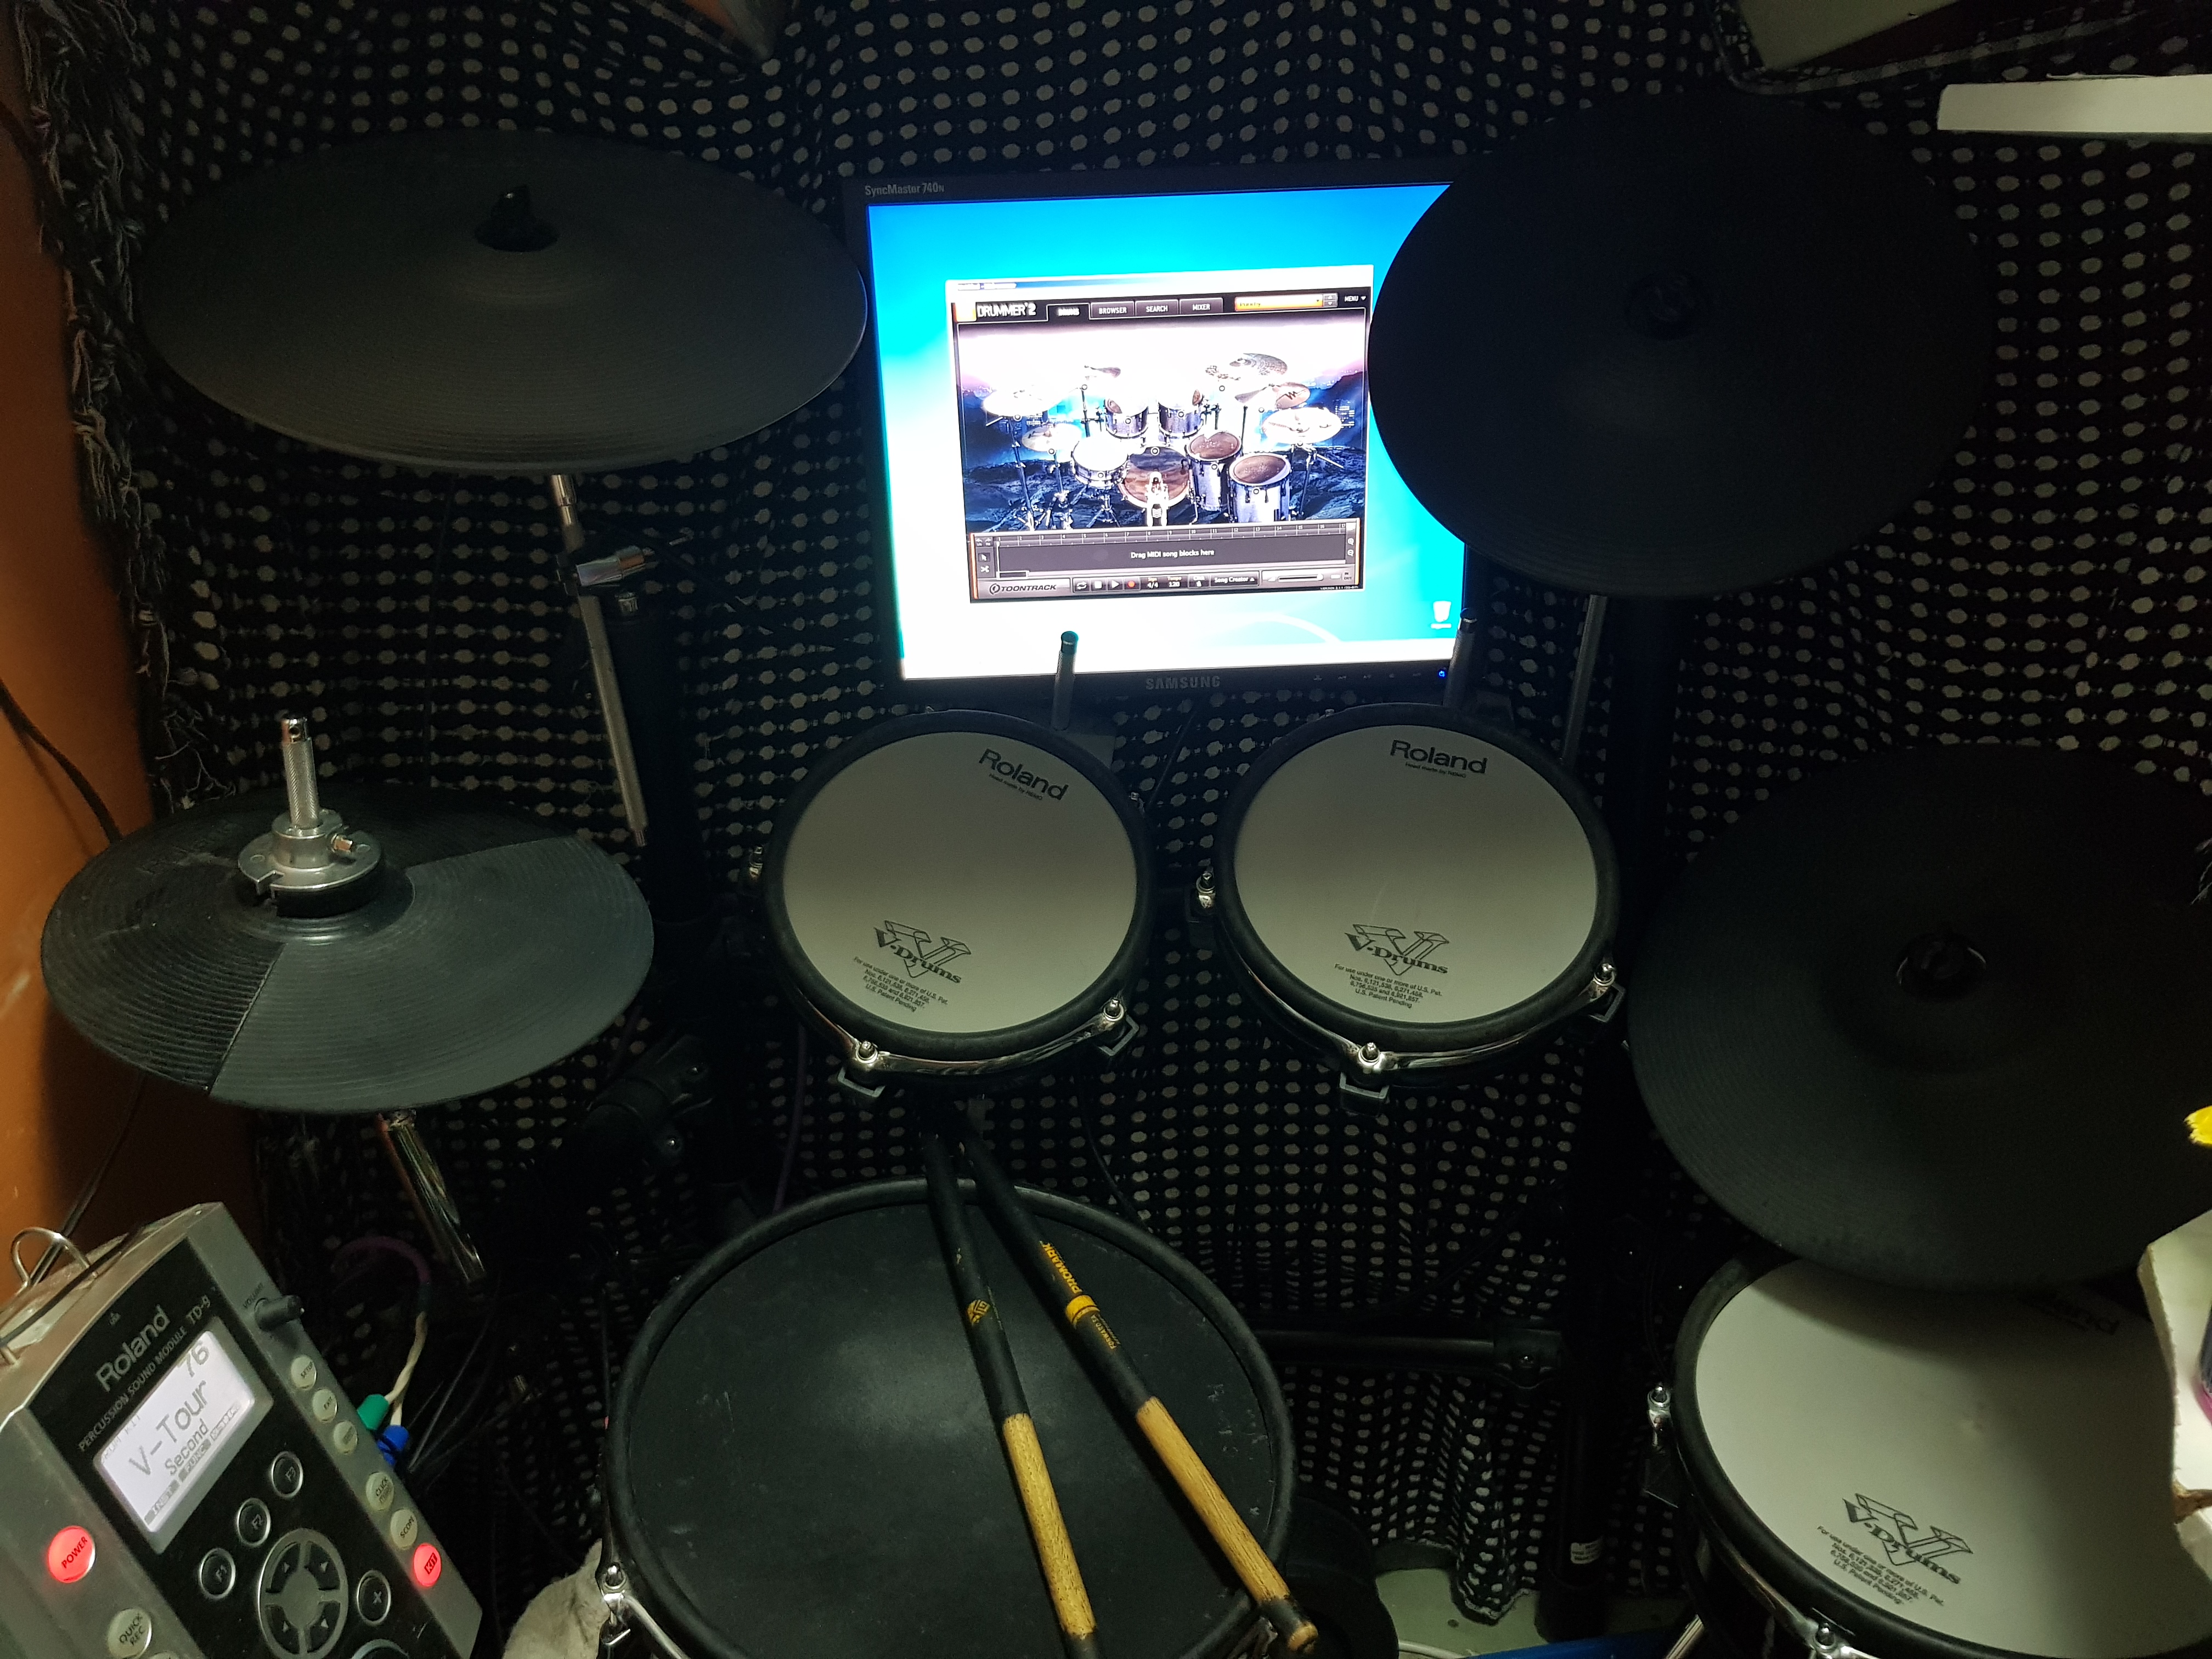 Педаль для бас-барабана: устройство и настройка